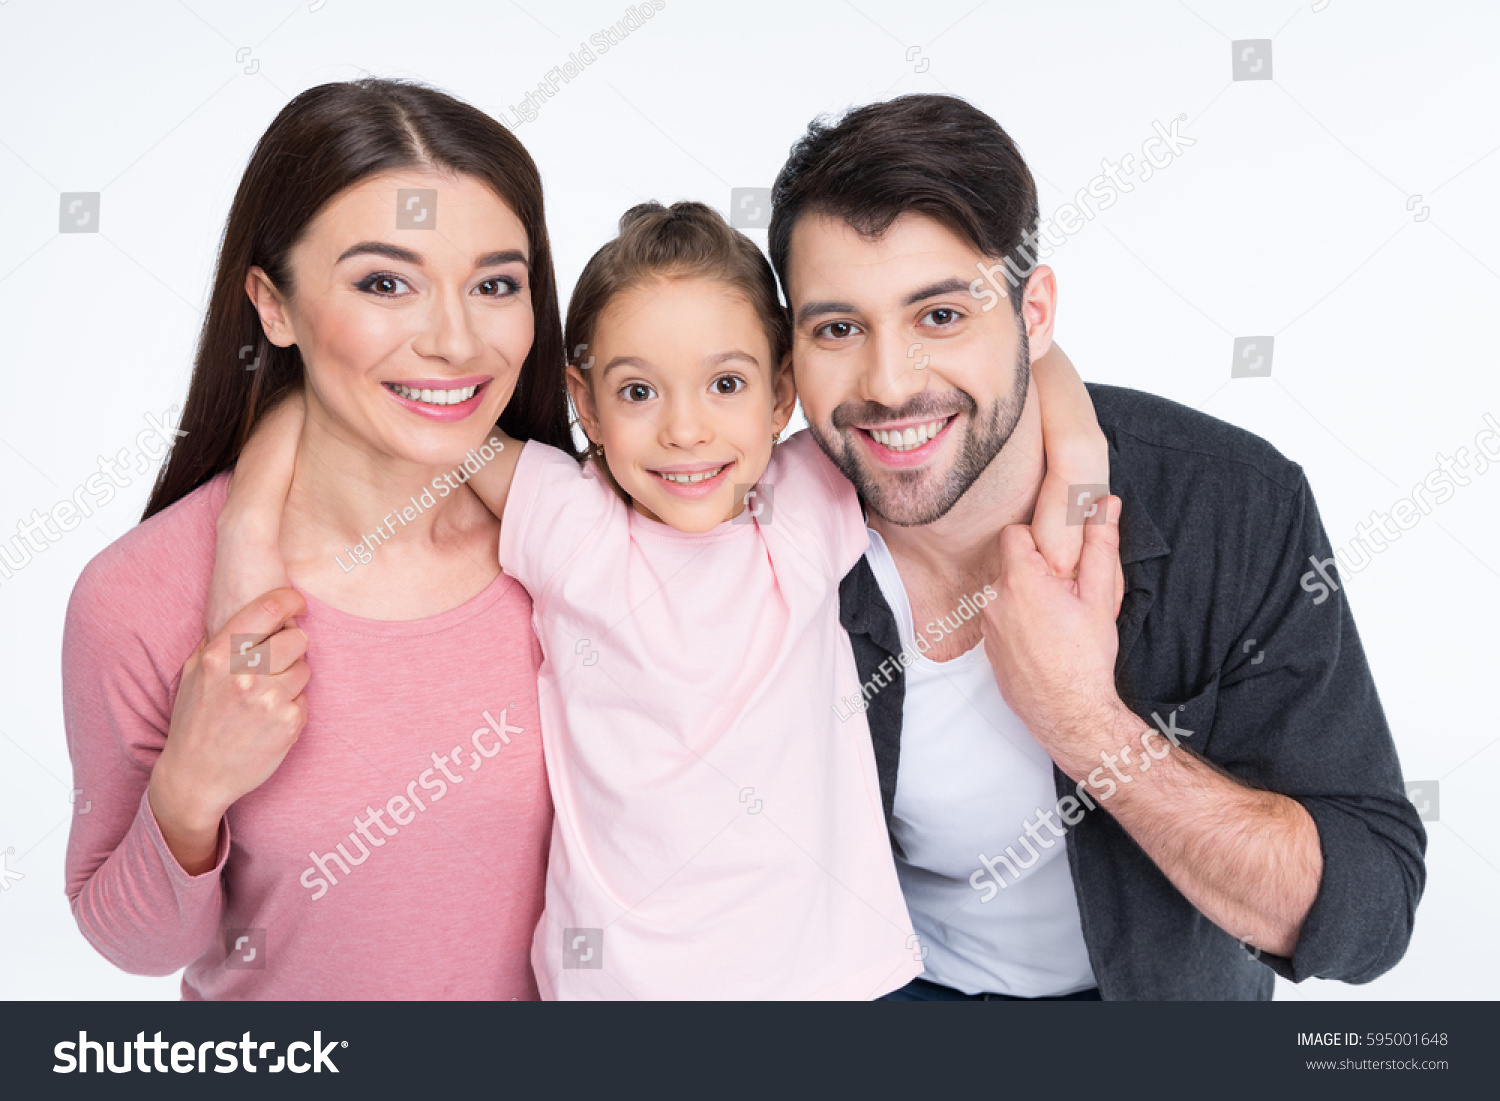 Семья с одним ребенком фото